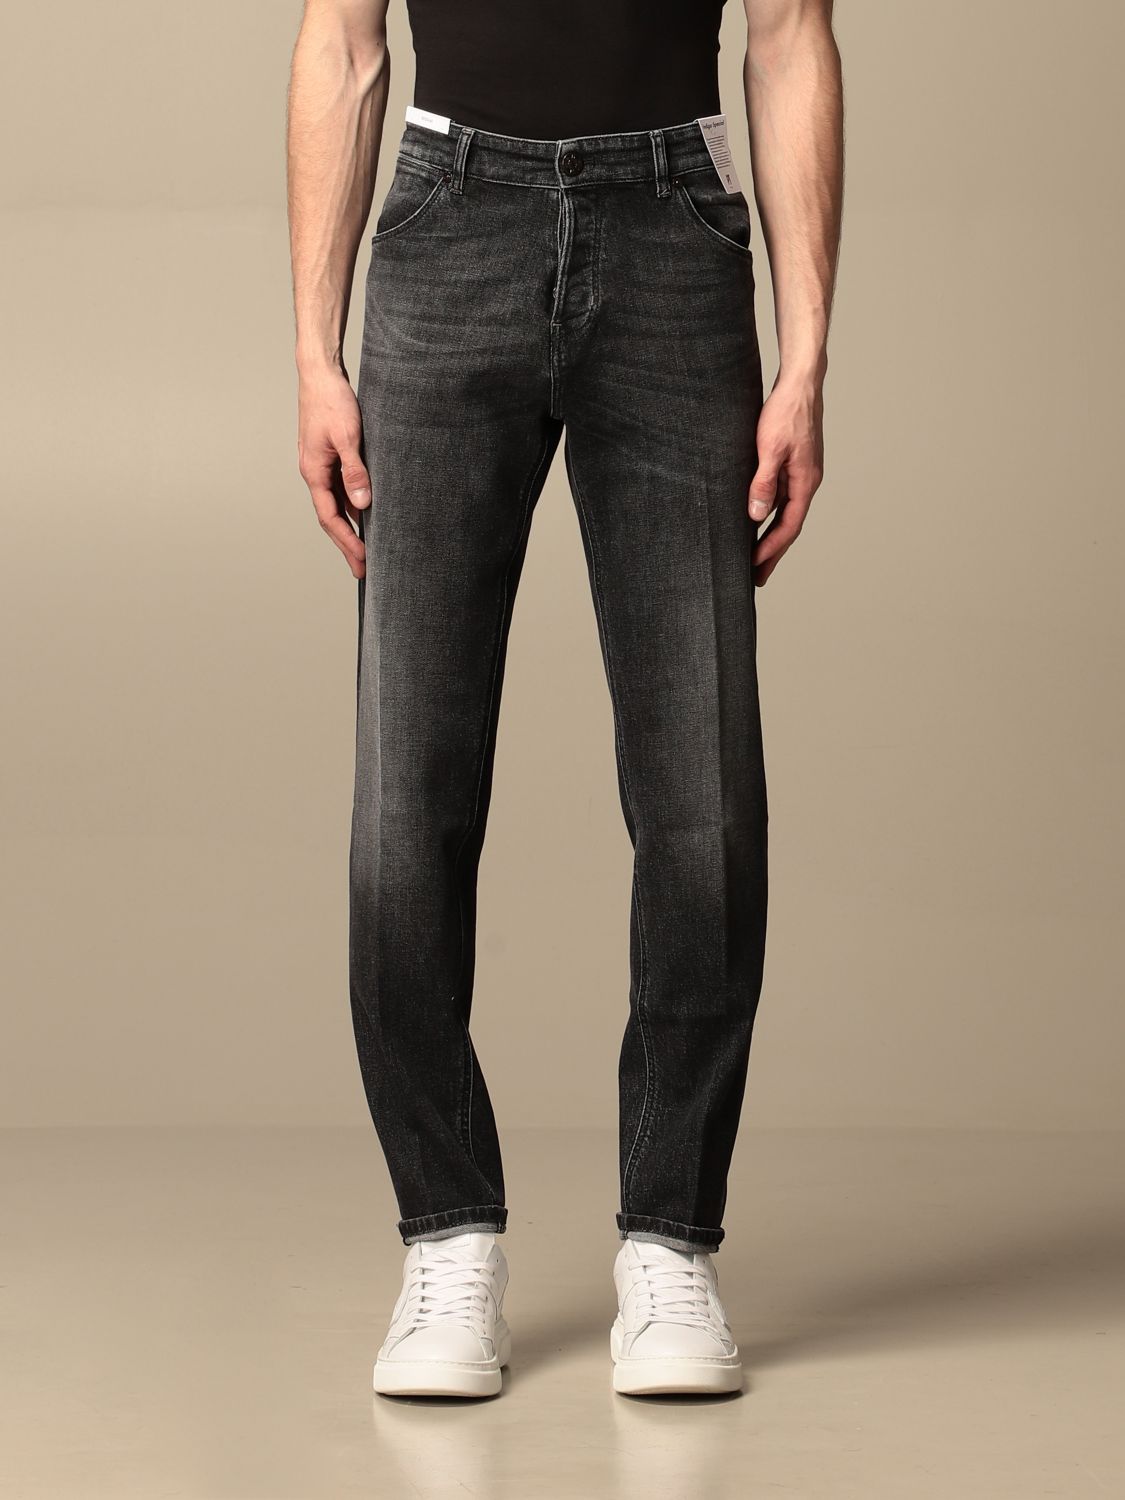 Jeans Pt: Jeans men Pt grey 1